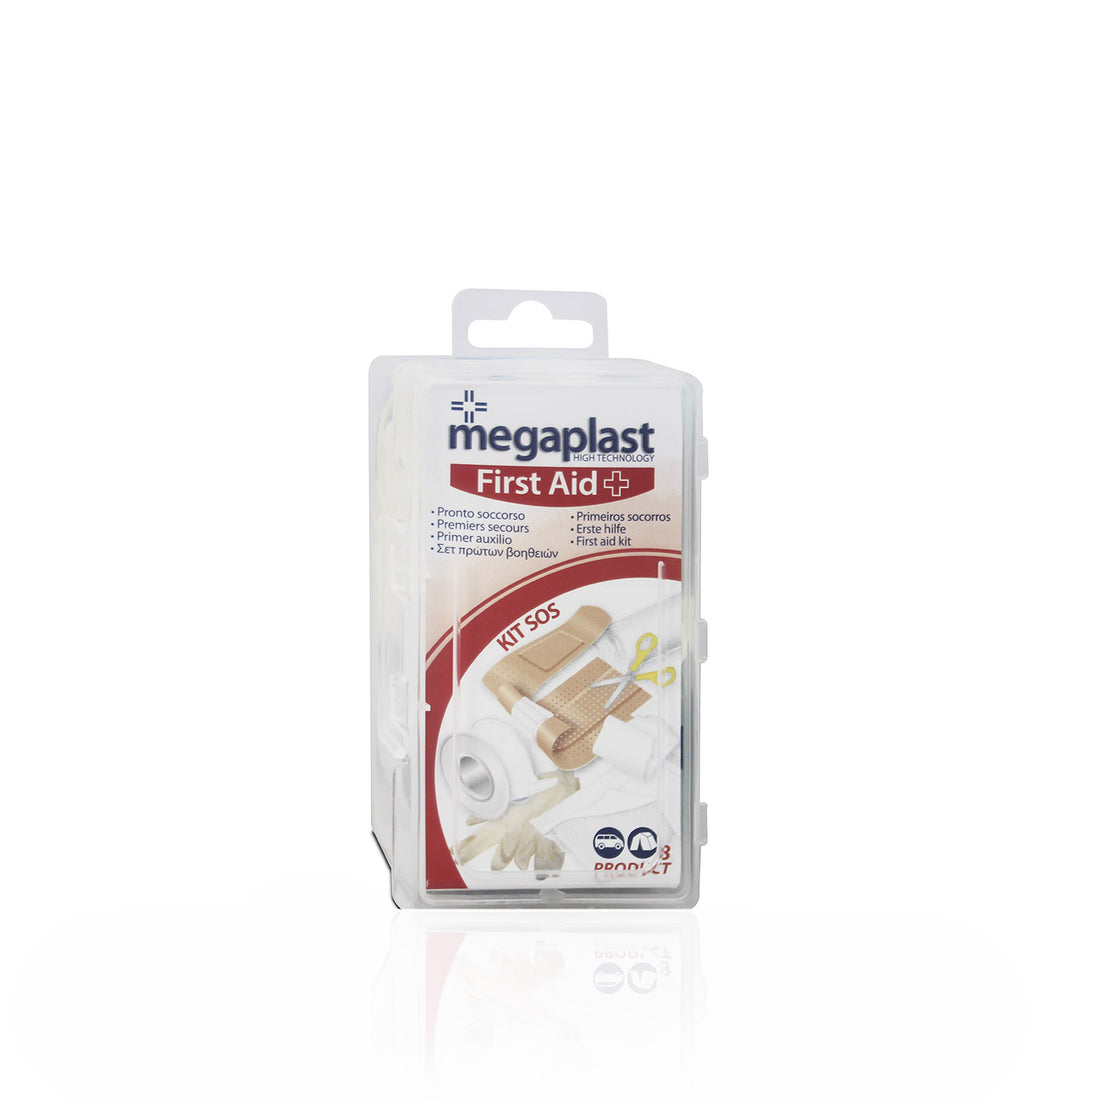 Megaplast First Aid Kit